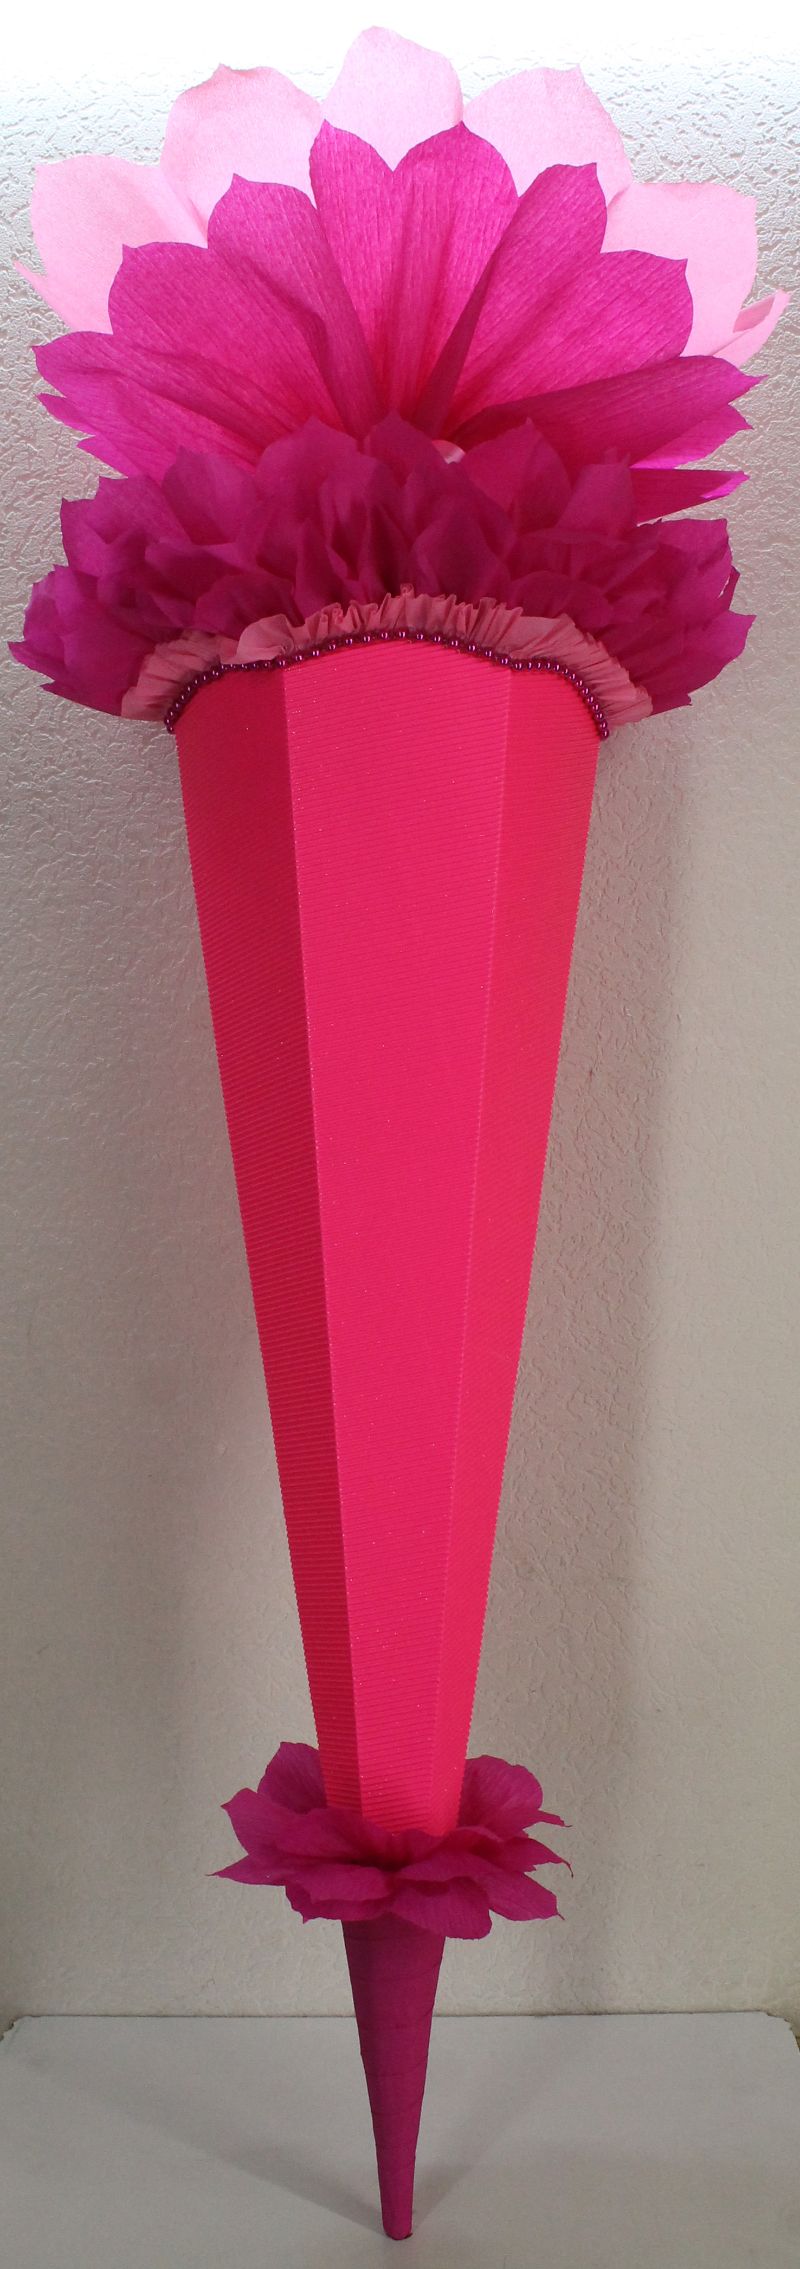  - Schultüte Zuckertüte Rohling zum selbst verzieren Rohling 70 75 80 85 90 100 cm / 1m für Mädchen HANDARBEIT pink rosa leuchtpink